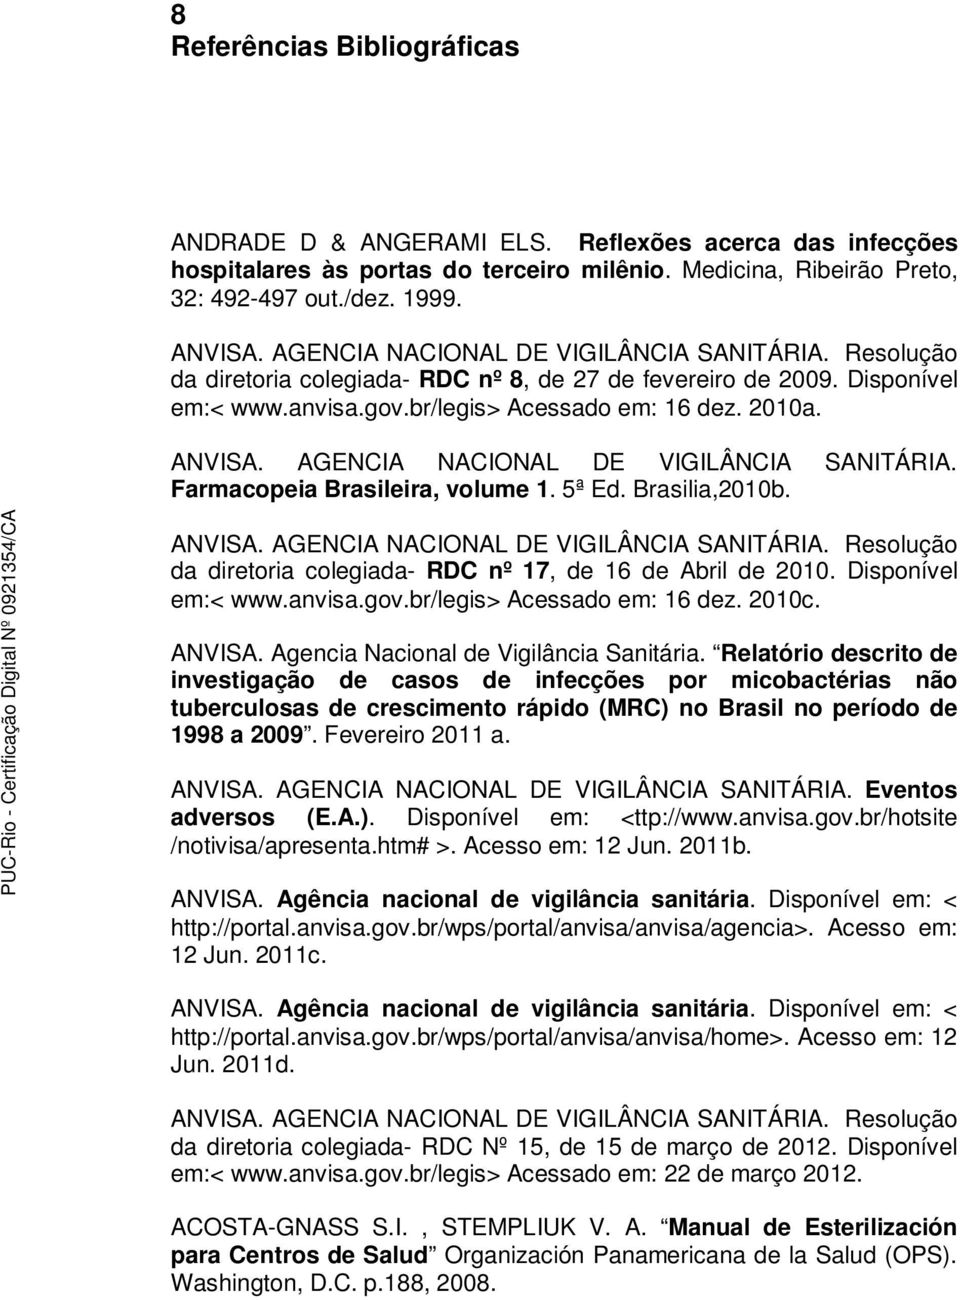 AGENCIA NACIONAL DE VIGILÂNCIA SANITÁRIA. Farmacopeia Brasileira, volume 1. 5ª Ed. Brasilia,2010b. ANVISA. AGENCIA NACIONAL DE VIGILÂNCIA SANITÁRIA.